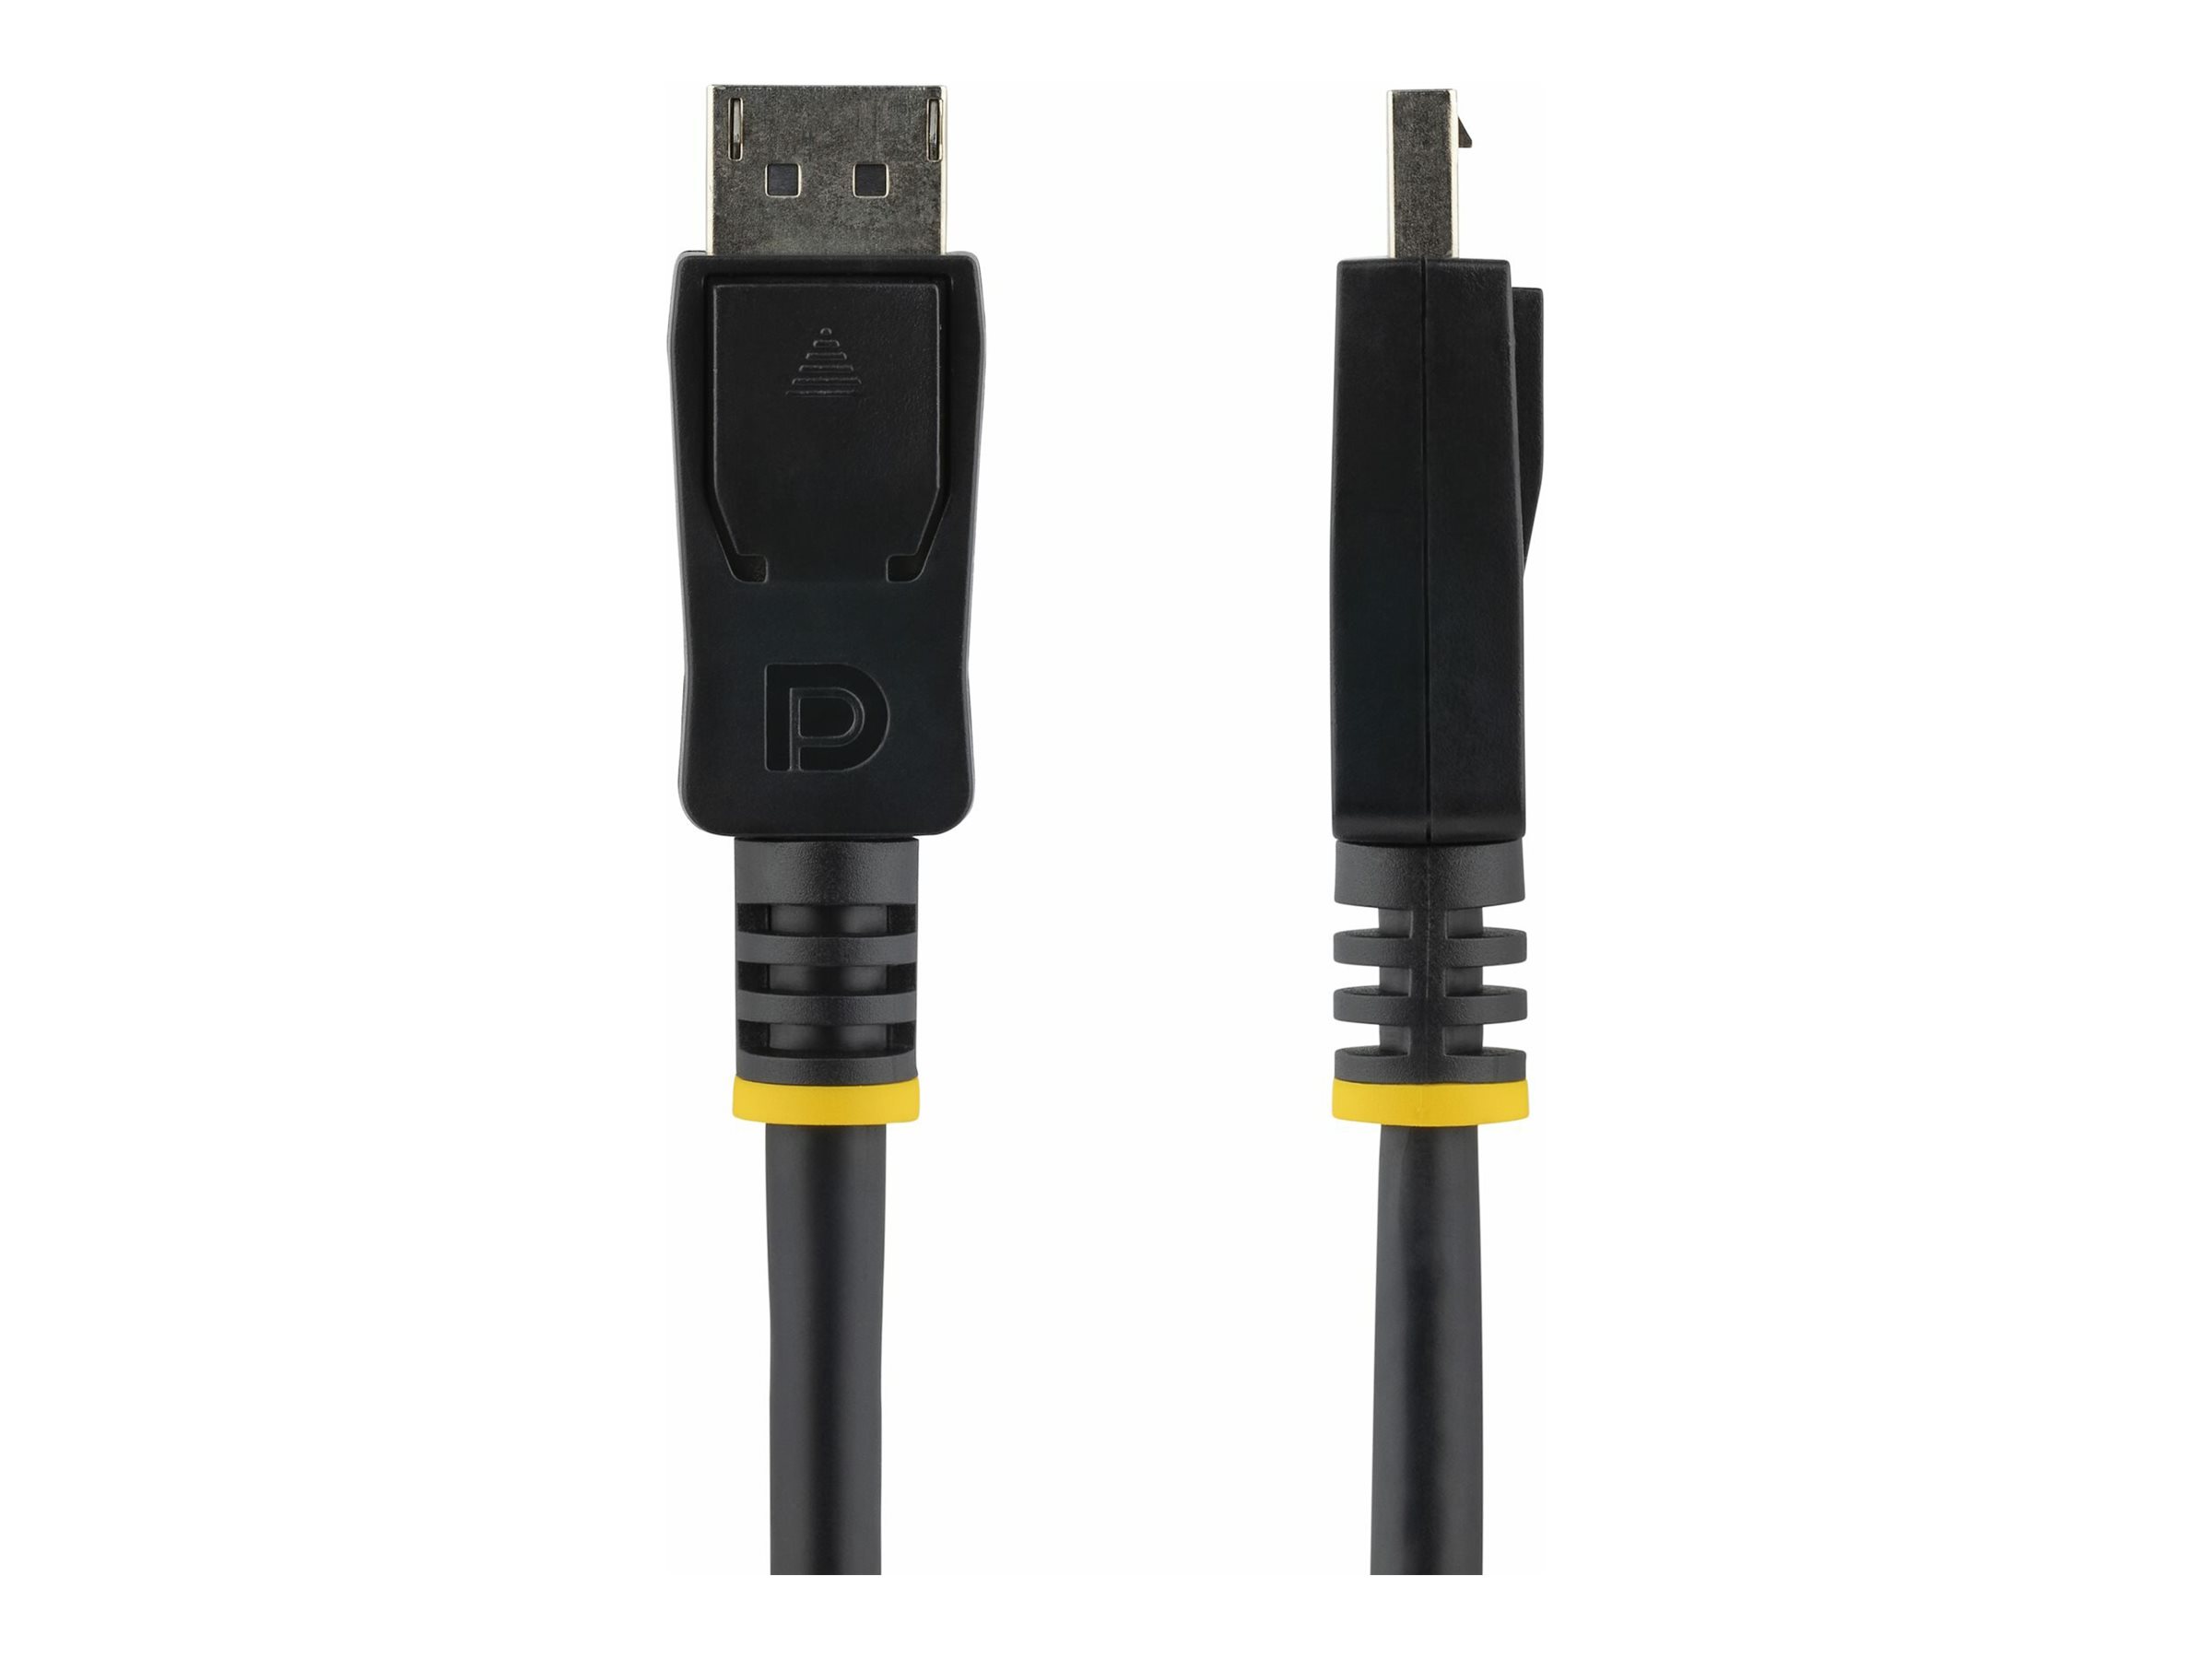 StarTech.com 3m DisplayPort 1.2 Kabel mit Verriegelung (Stecker/Stecker)